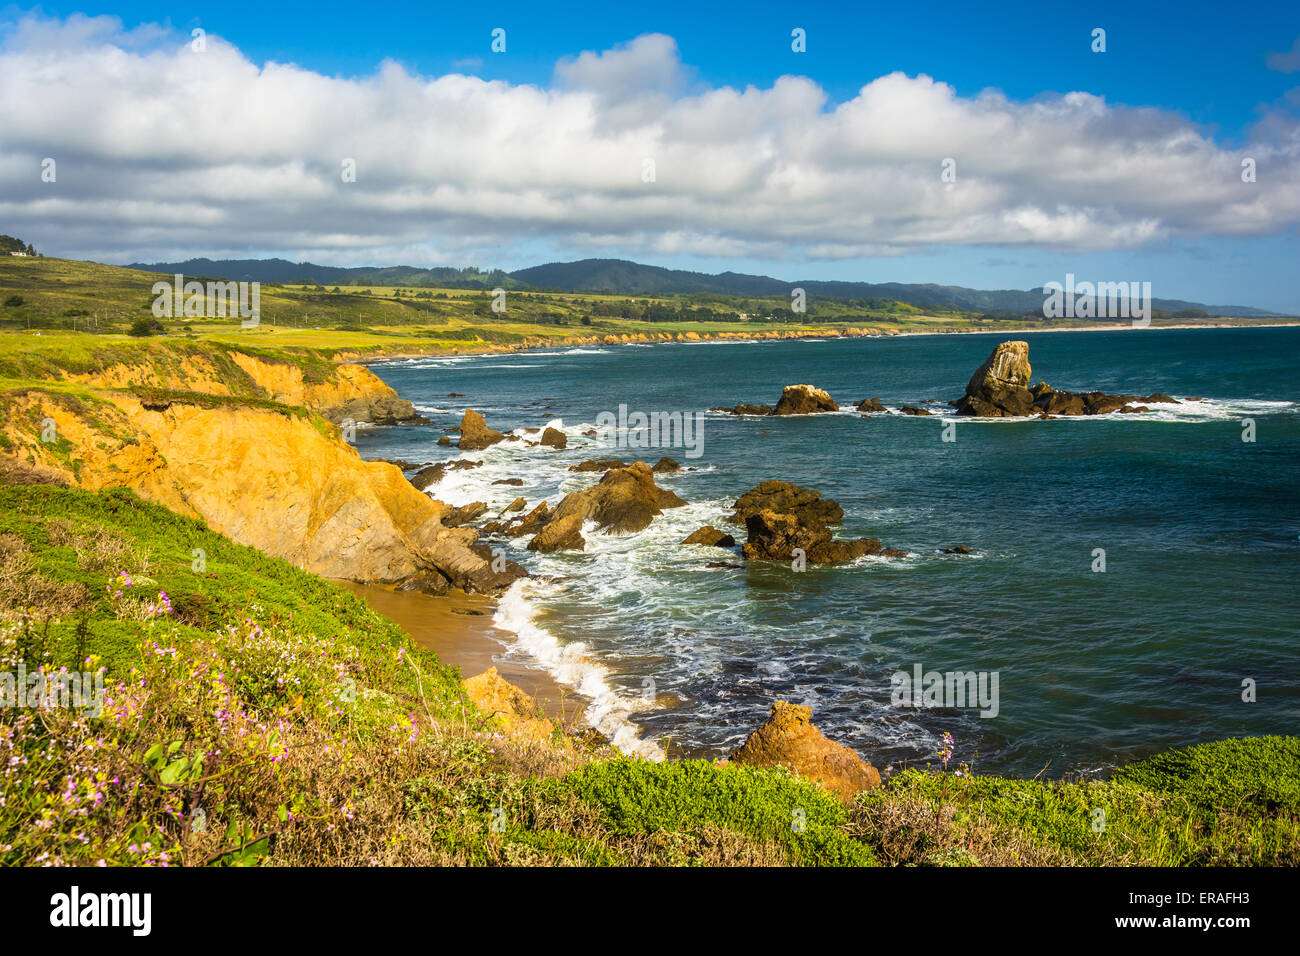 View of the Pacific Coast in Pescadero, California. Stock Photo